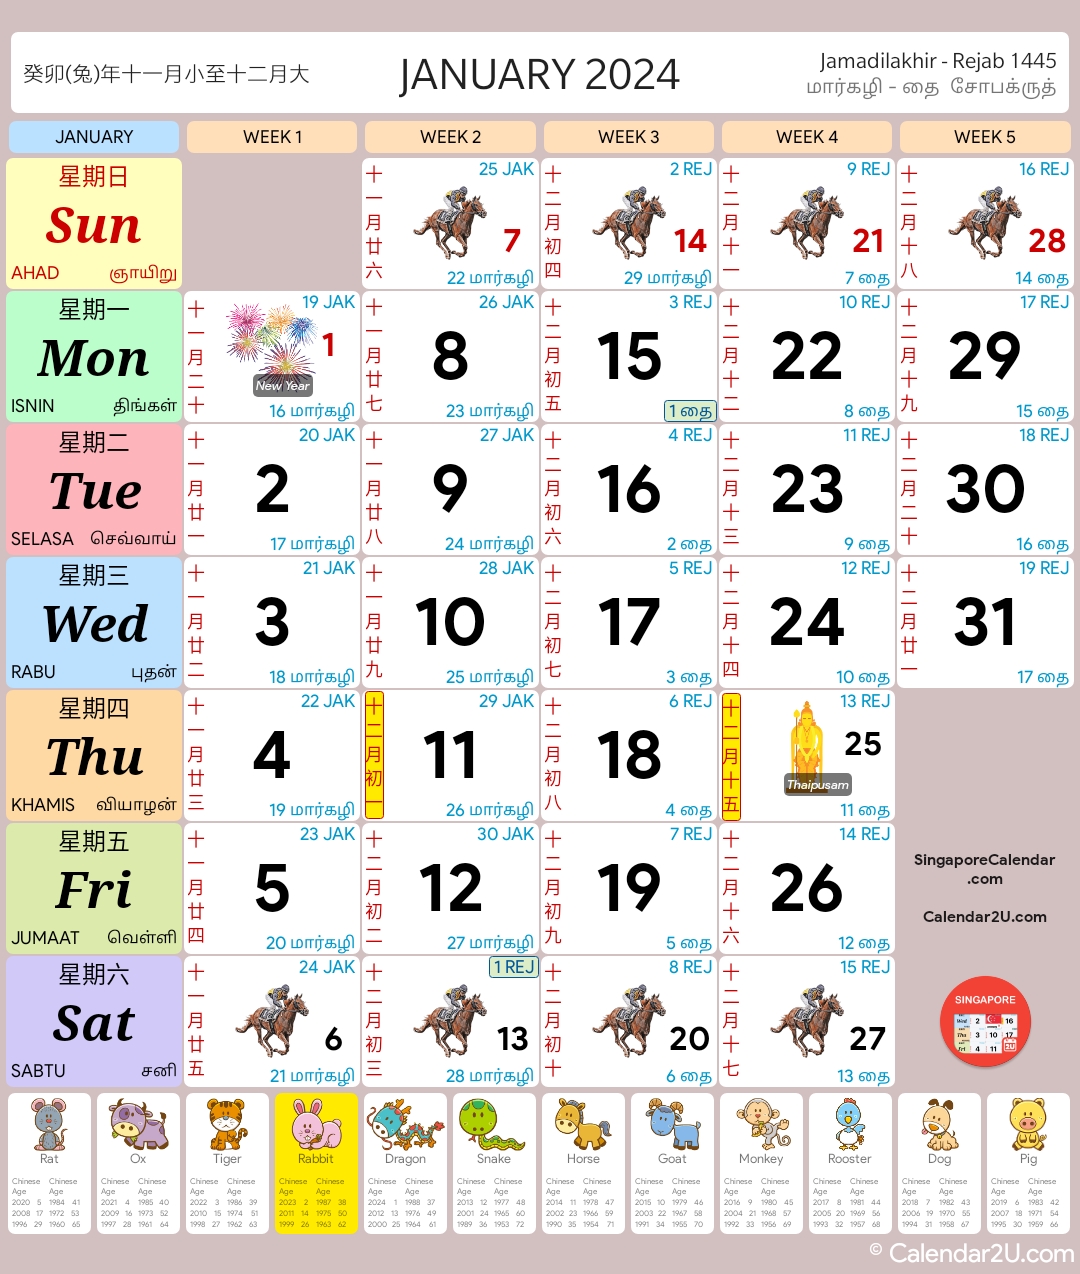 Singapore Calendar Blog